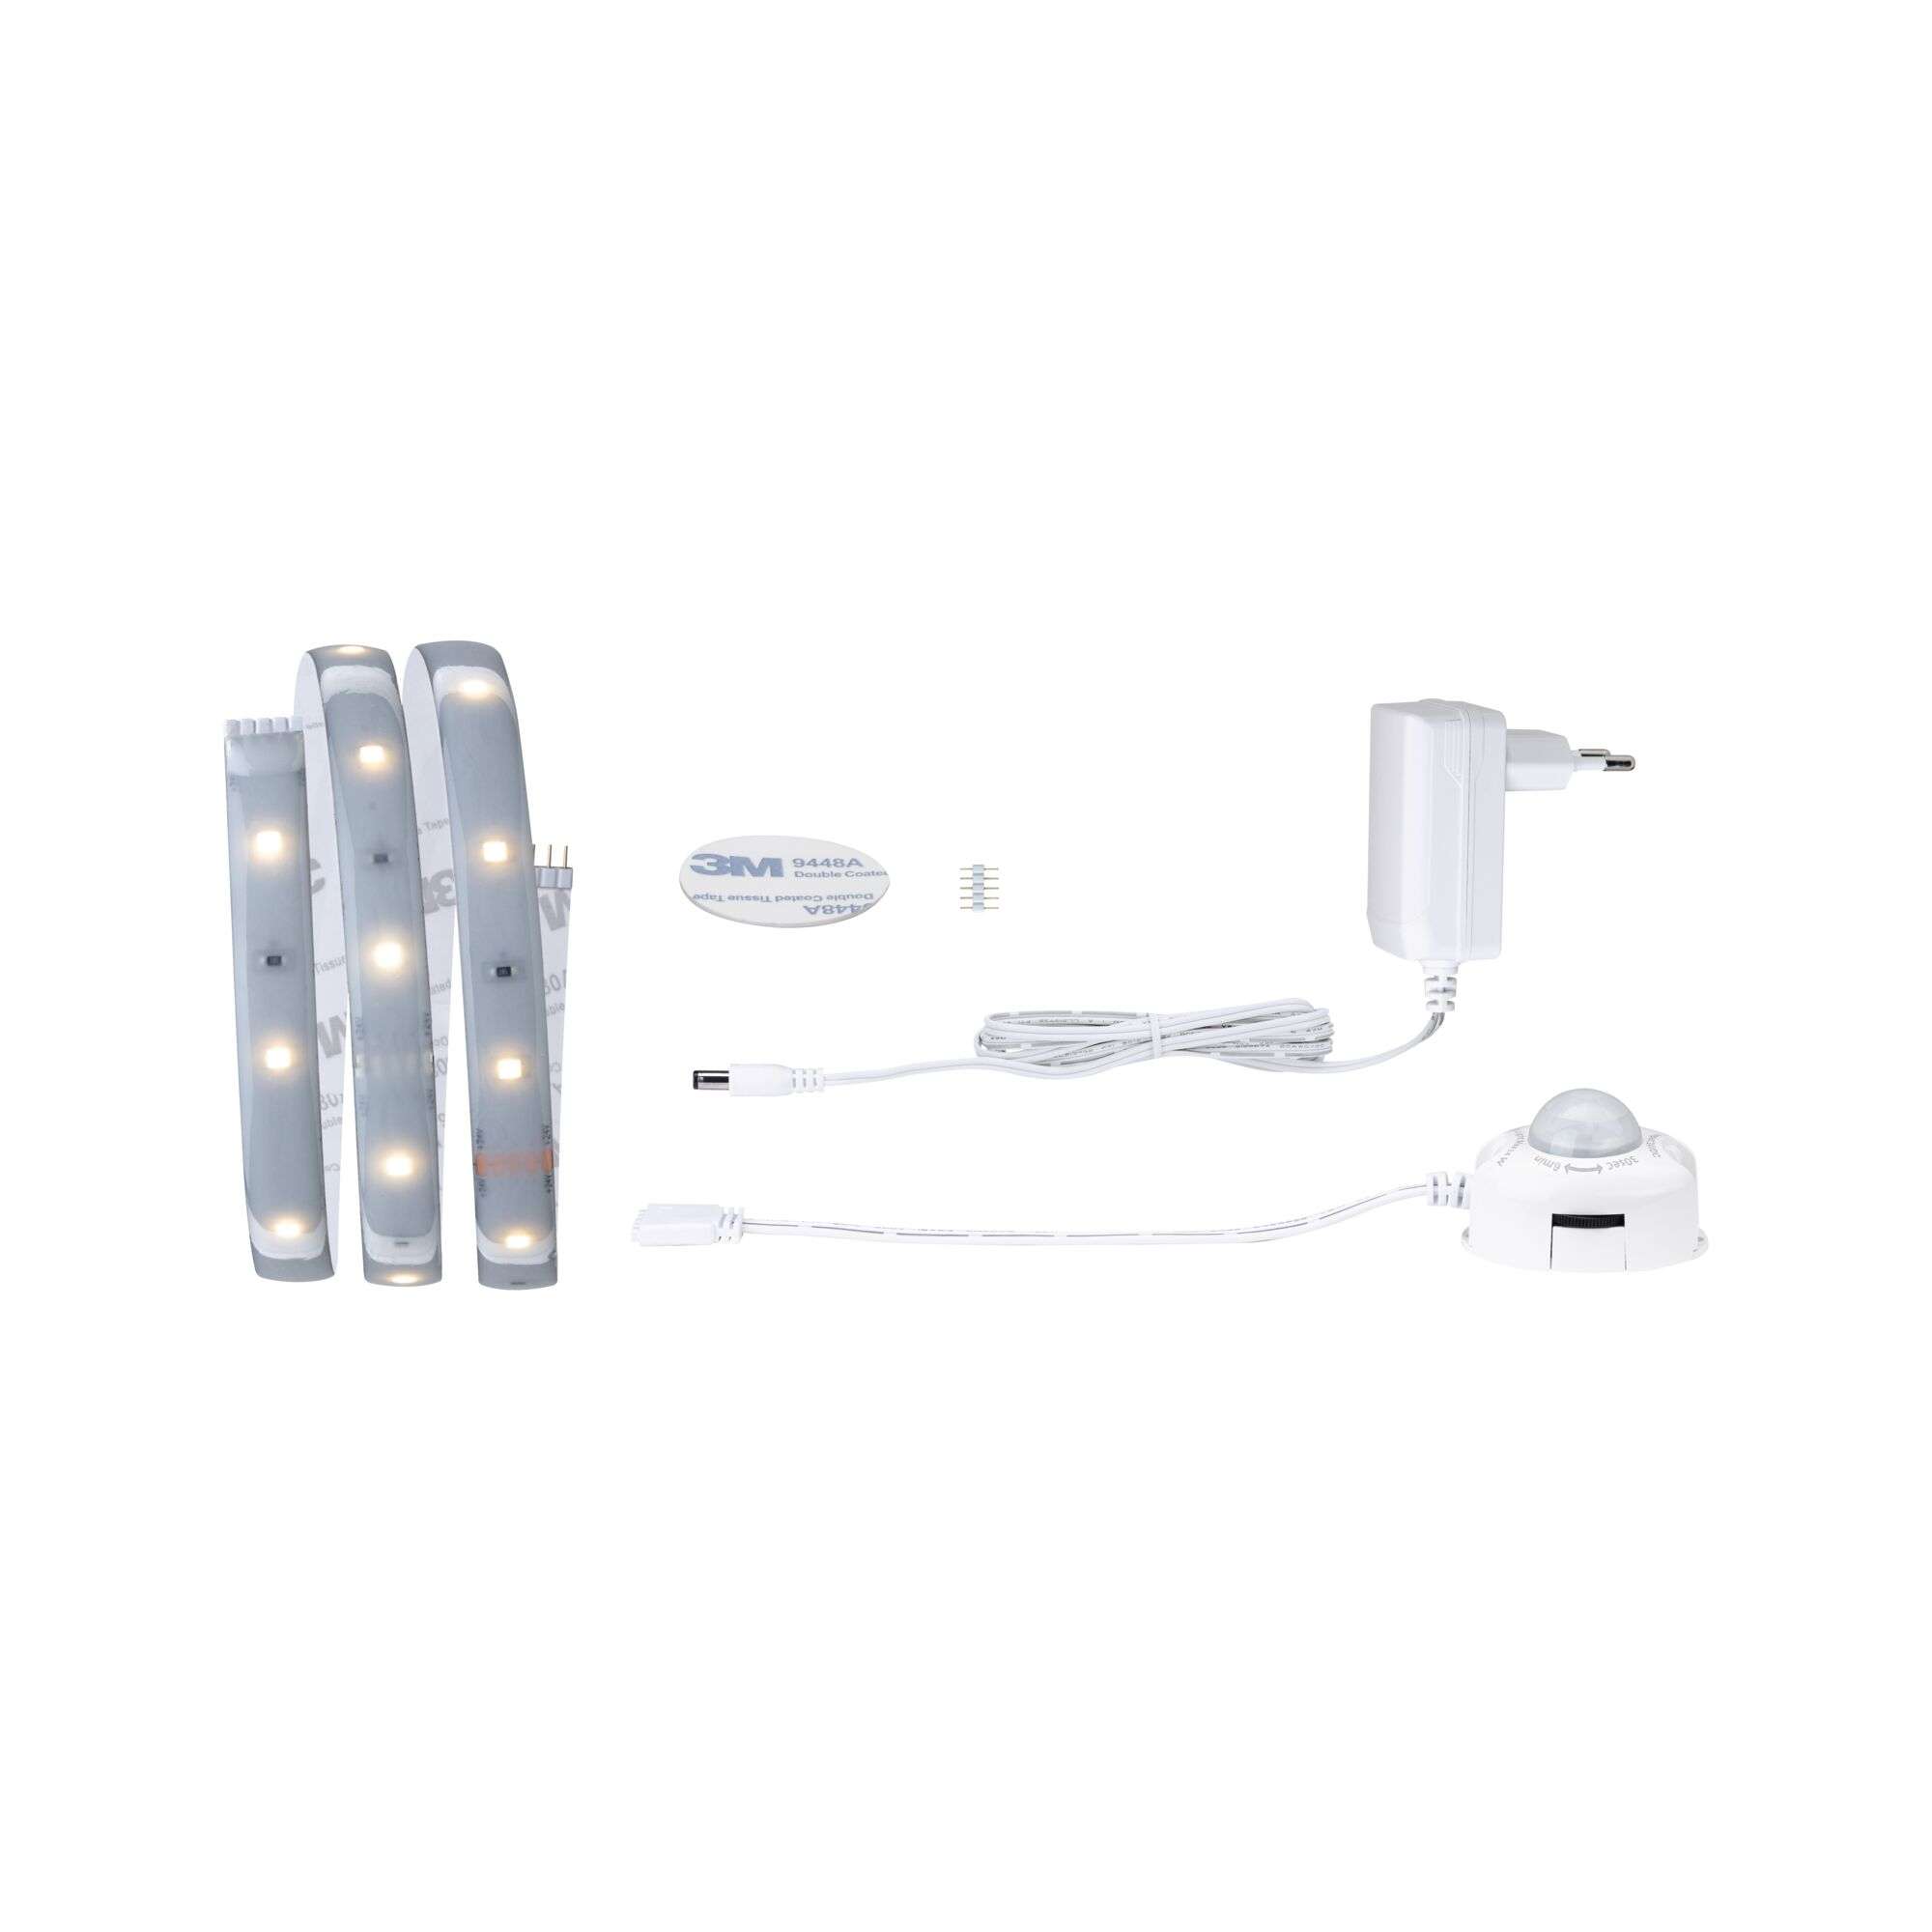 LED-Streifen-Set 'MaxLED 250 Comfort' 100 cm 4 W 300 lm 2700 K, Warmweiß mit Bewegungsmelder + product picture